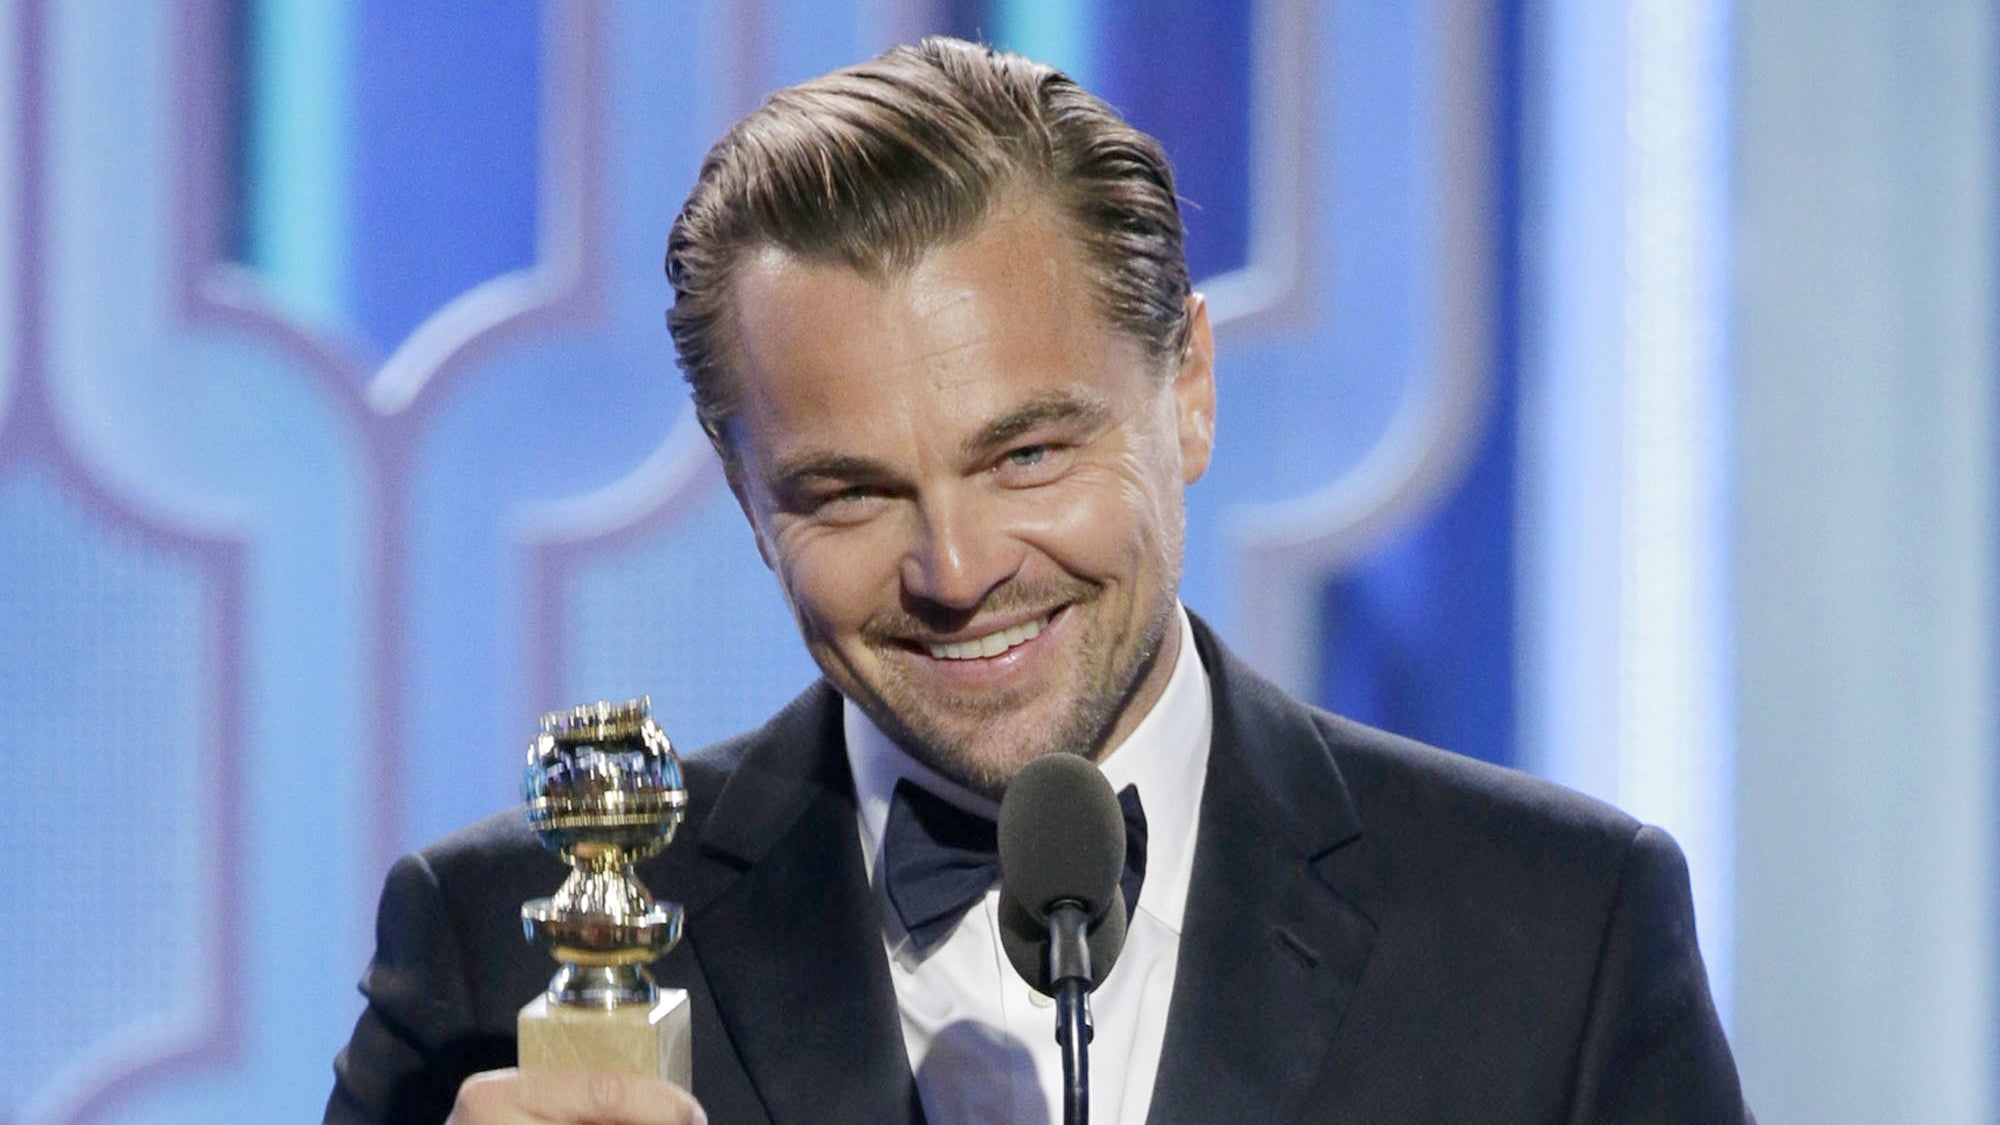 Leonardo DiCaprio won big for The Revenant.